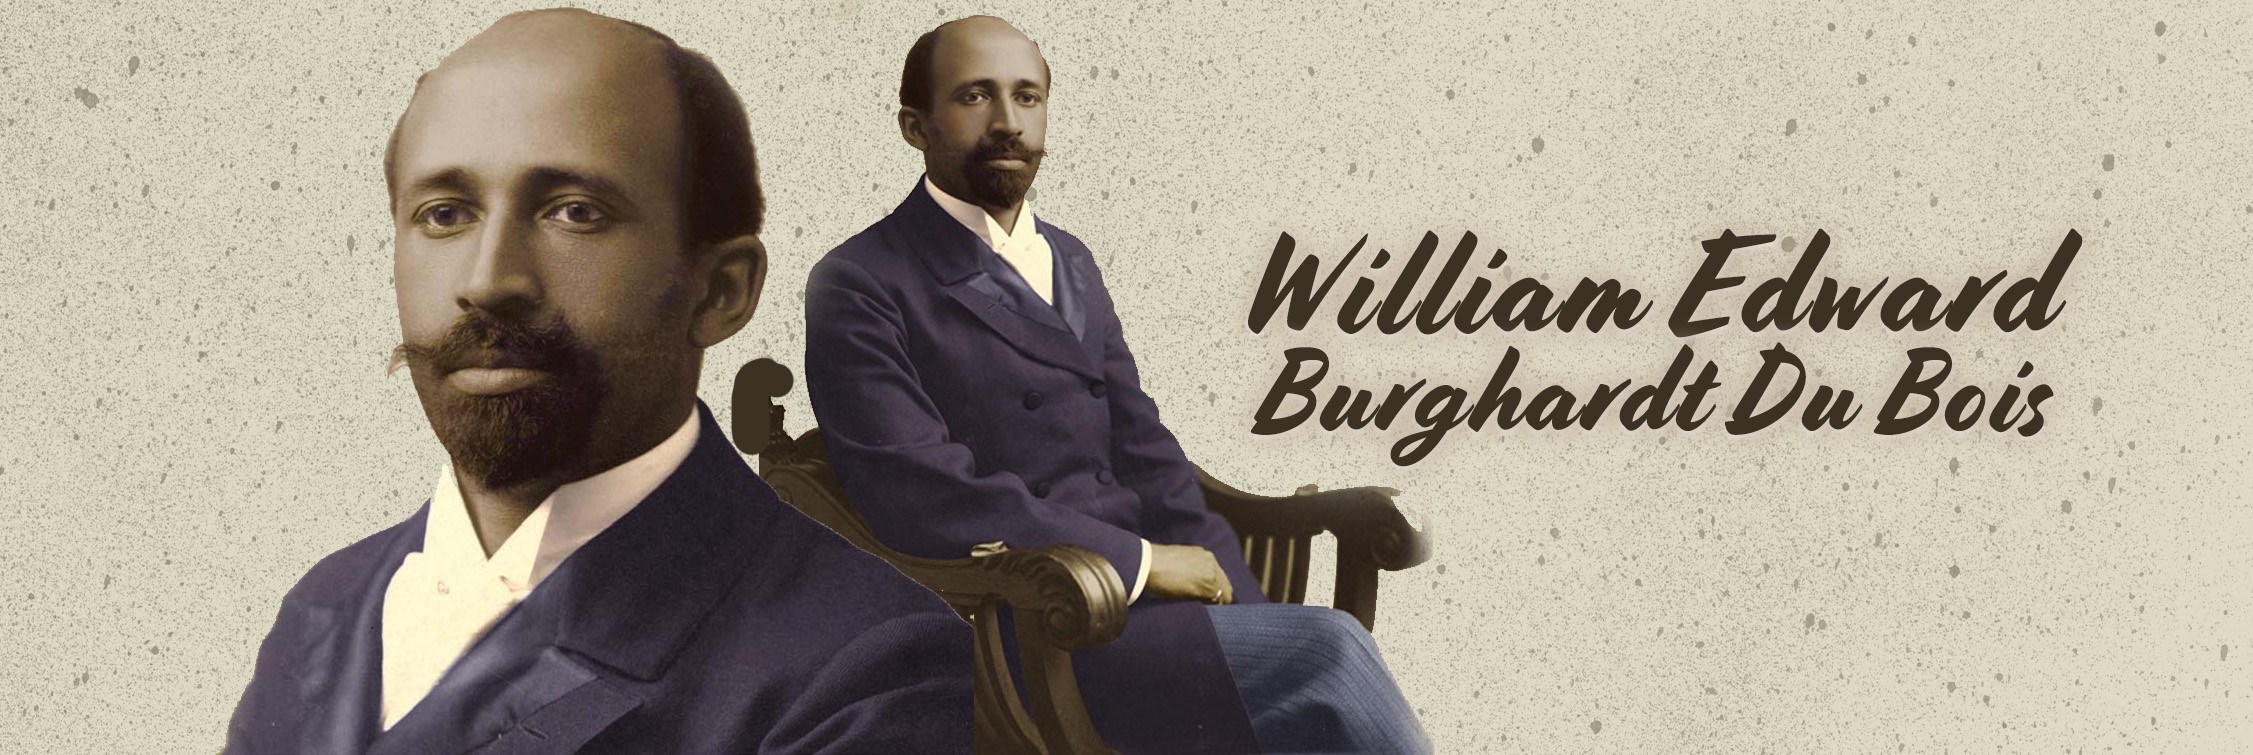 El legado y  obra de William Edward Du Bois